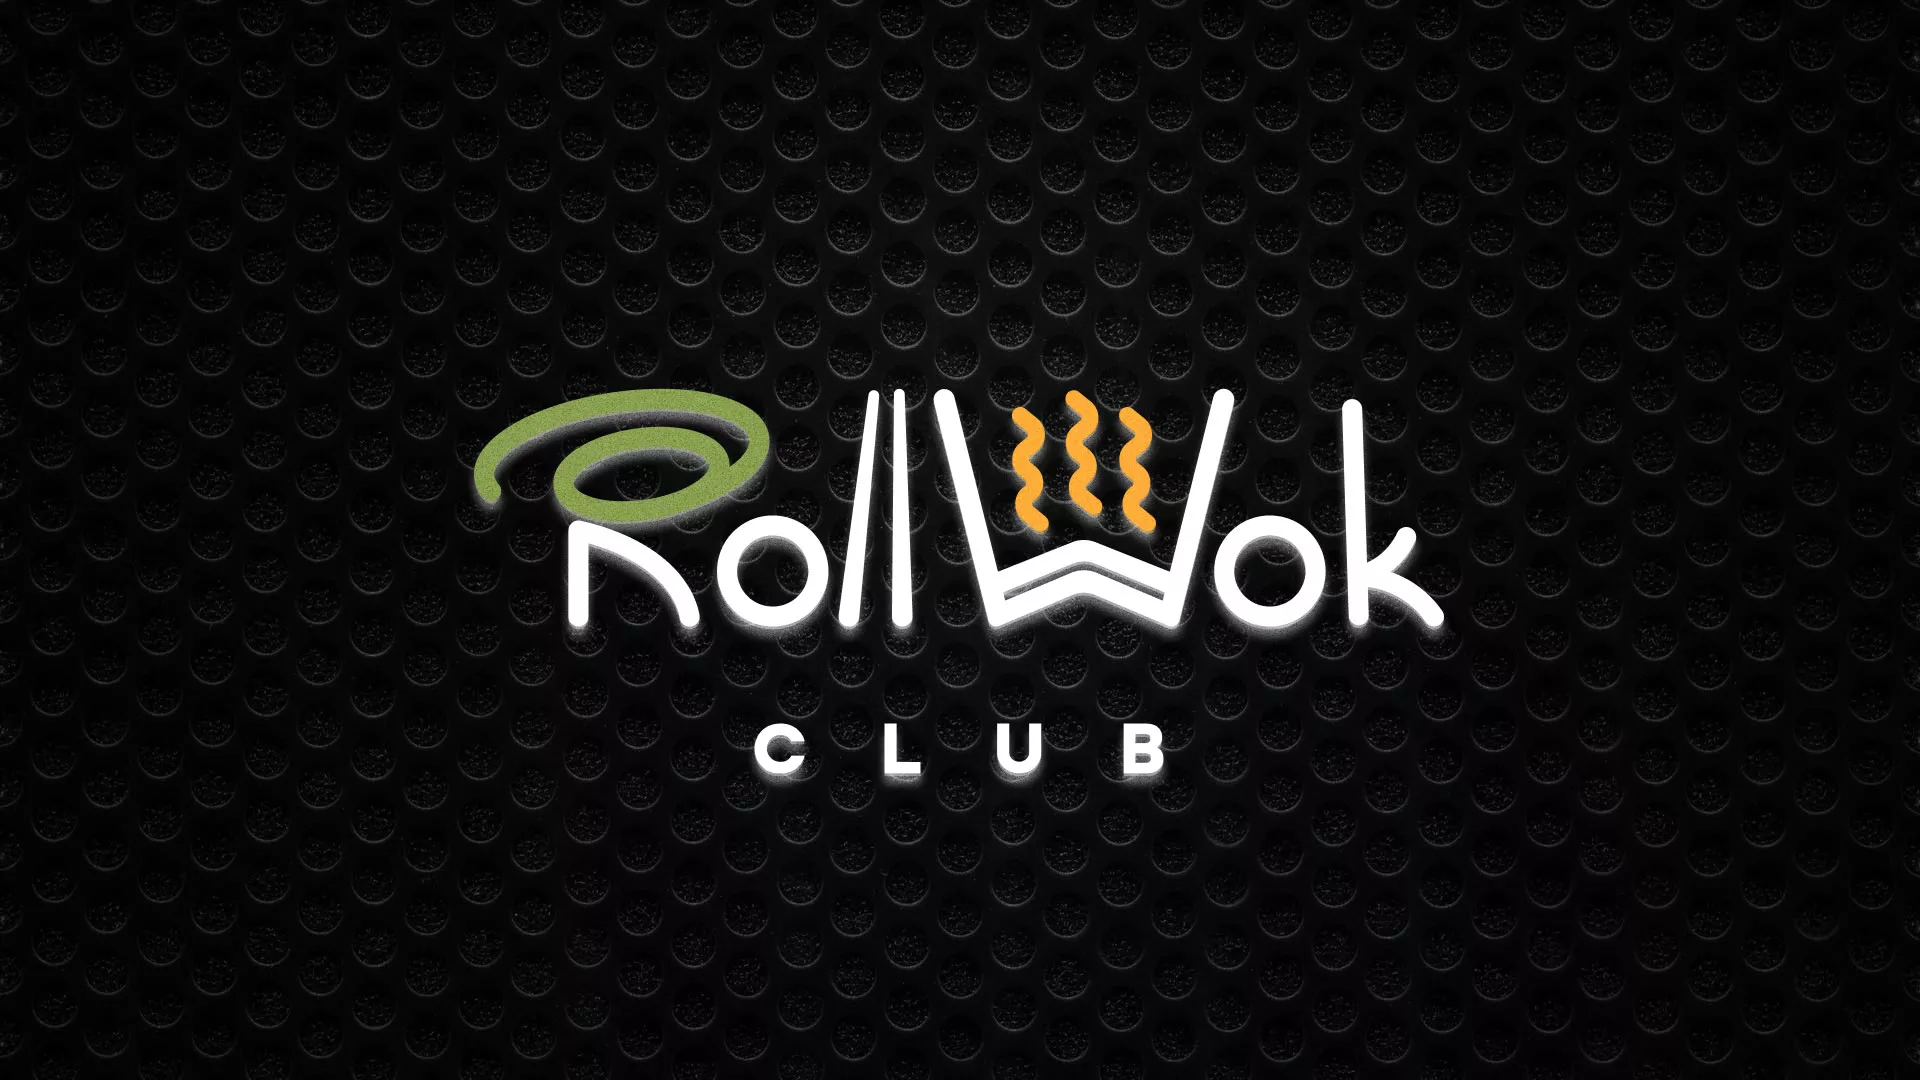 Брендирование торговых точек суши-бара «Roll Wok Club» в Задонске